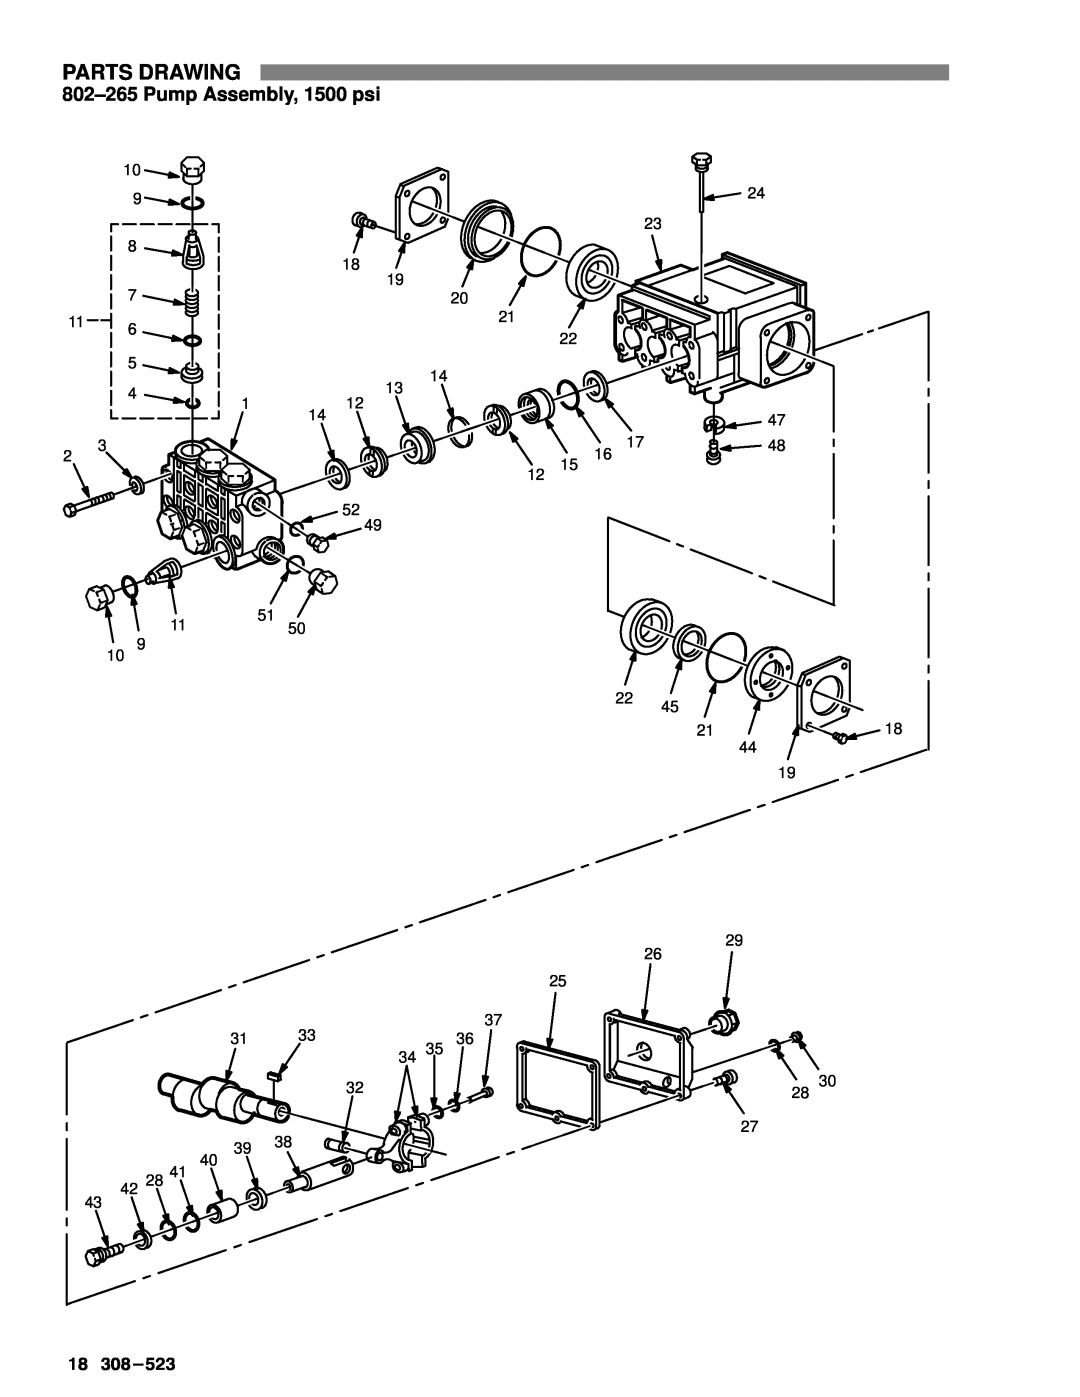 Graco Inc 800-671, 308-523, 800-672, 800-674, 800-670 manual 802±265 Pump Assembly, 1500 psi, Parts Drawing 